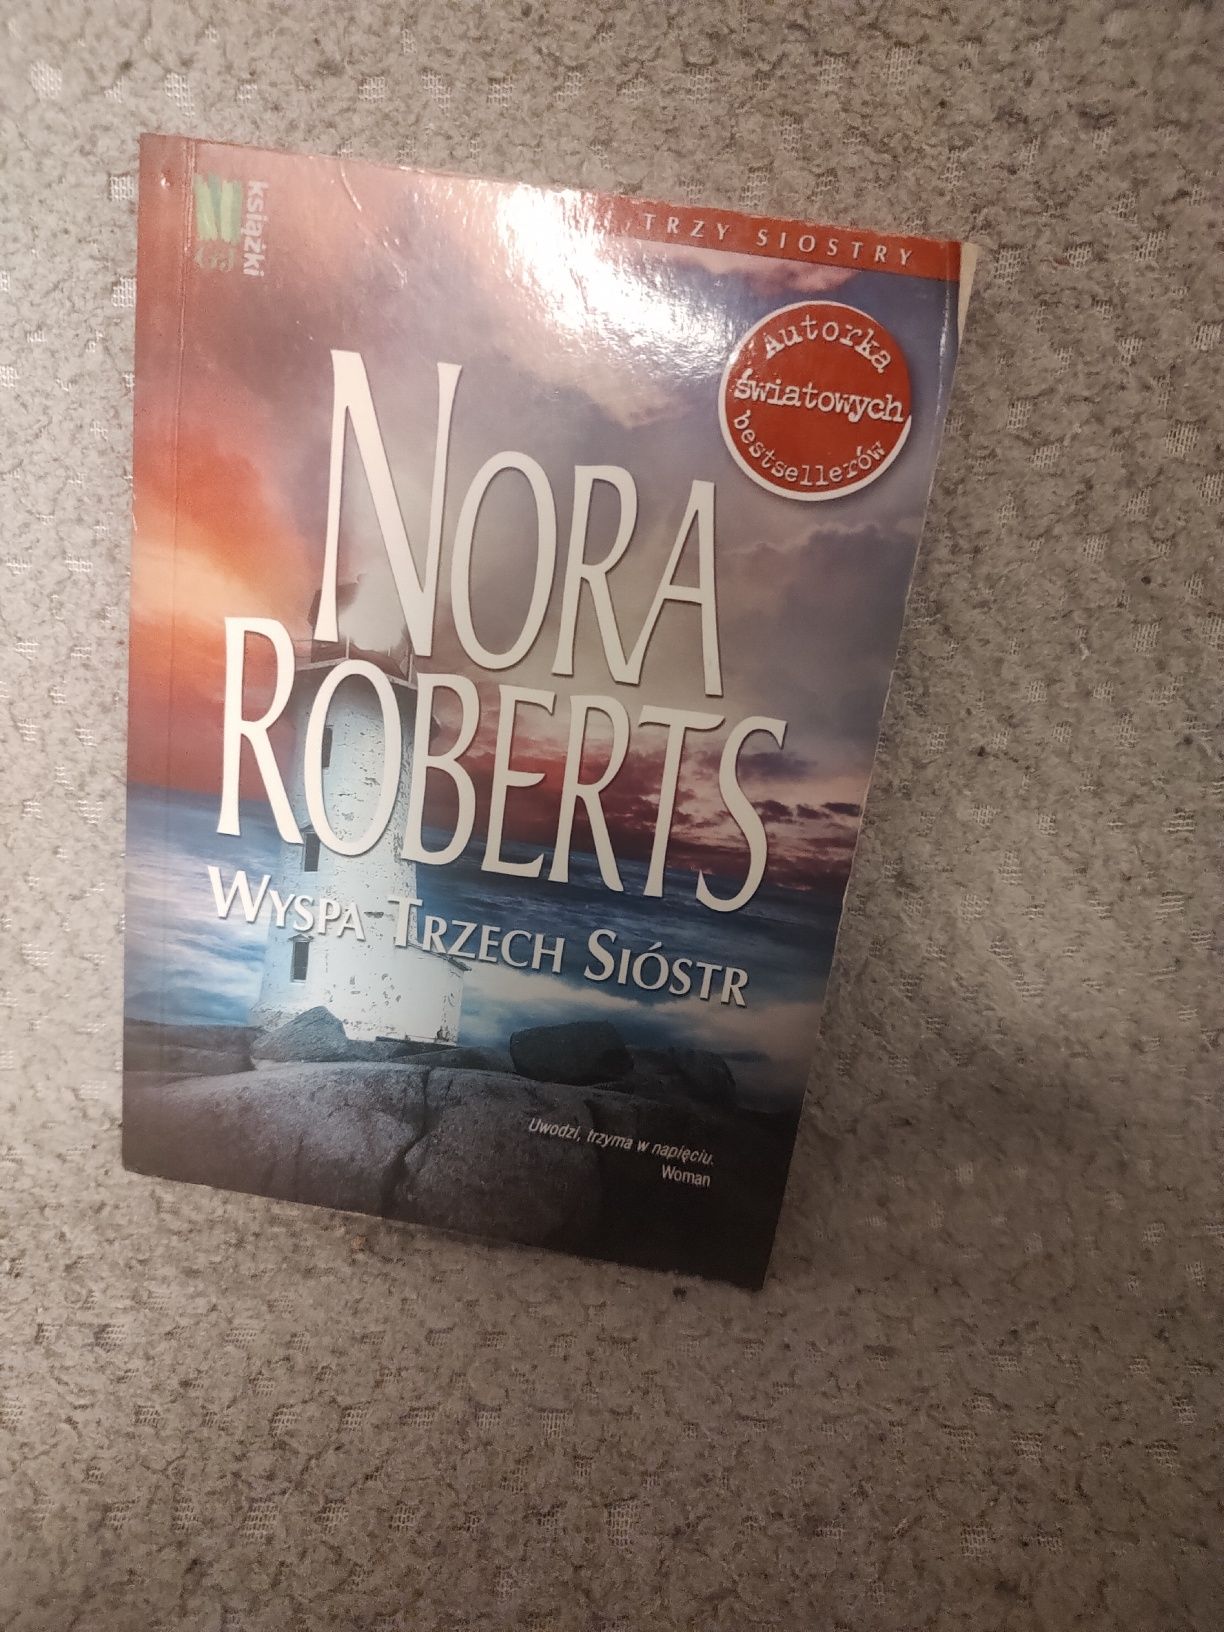 Książka Nora Roberts "Wyspa trzech sióstr"